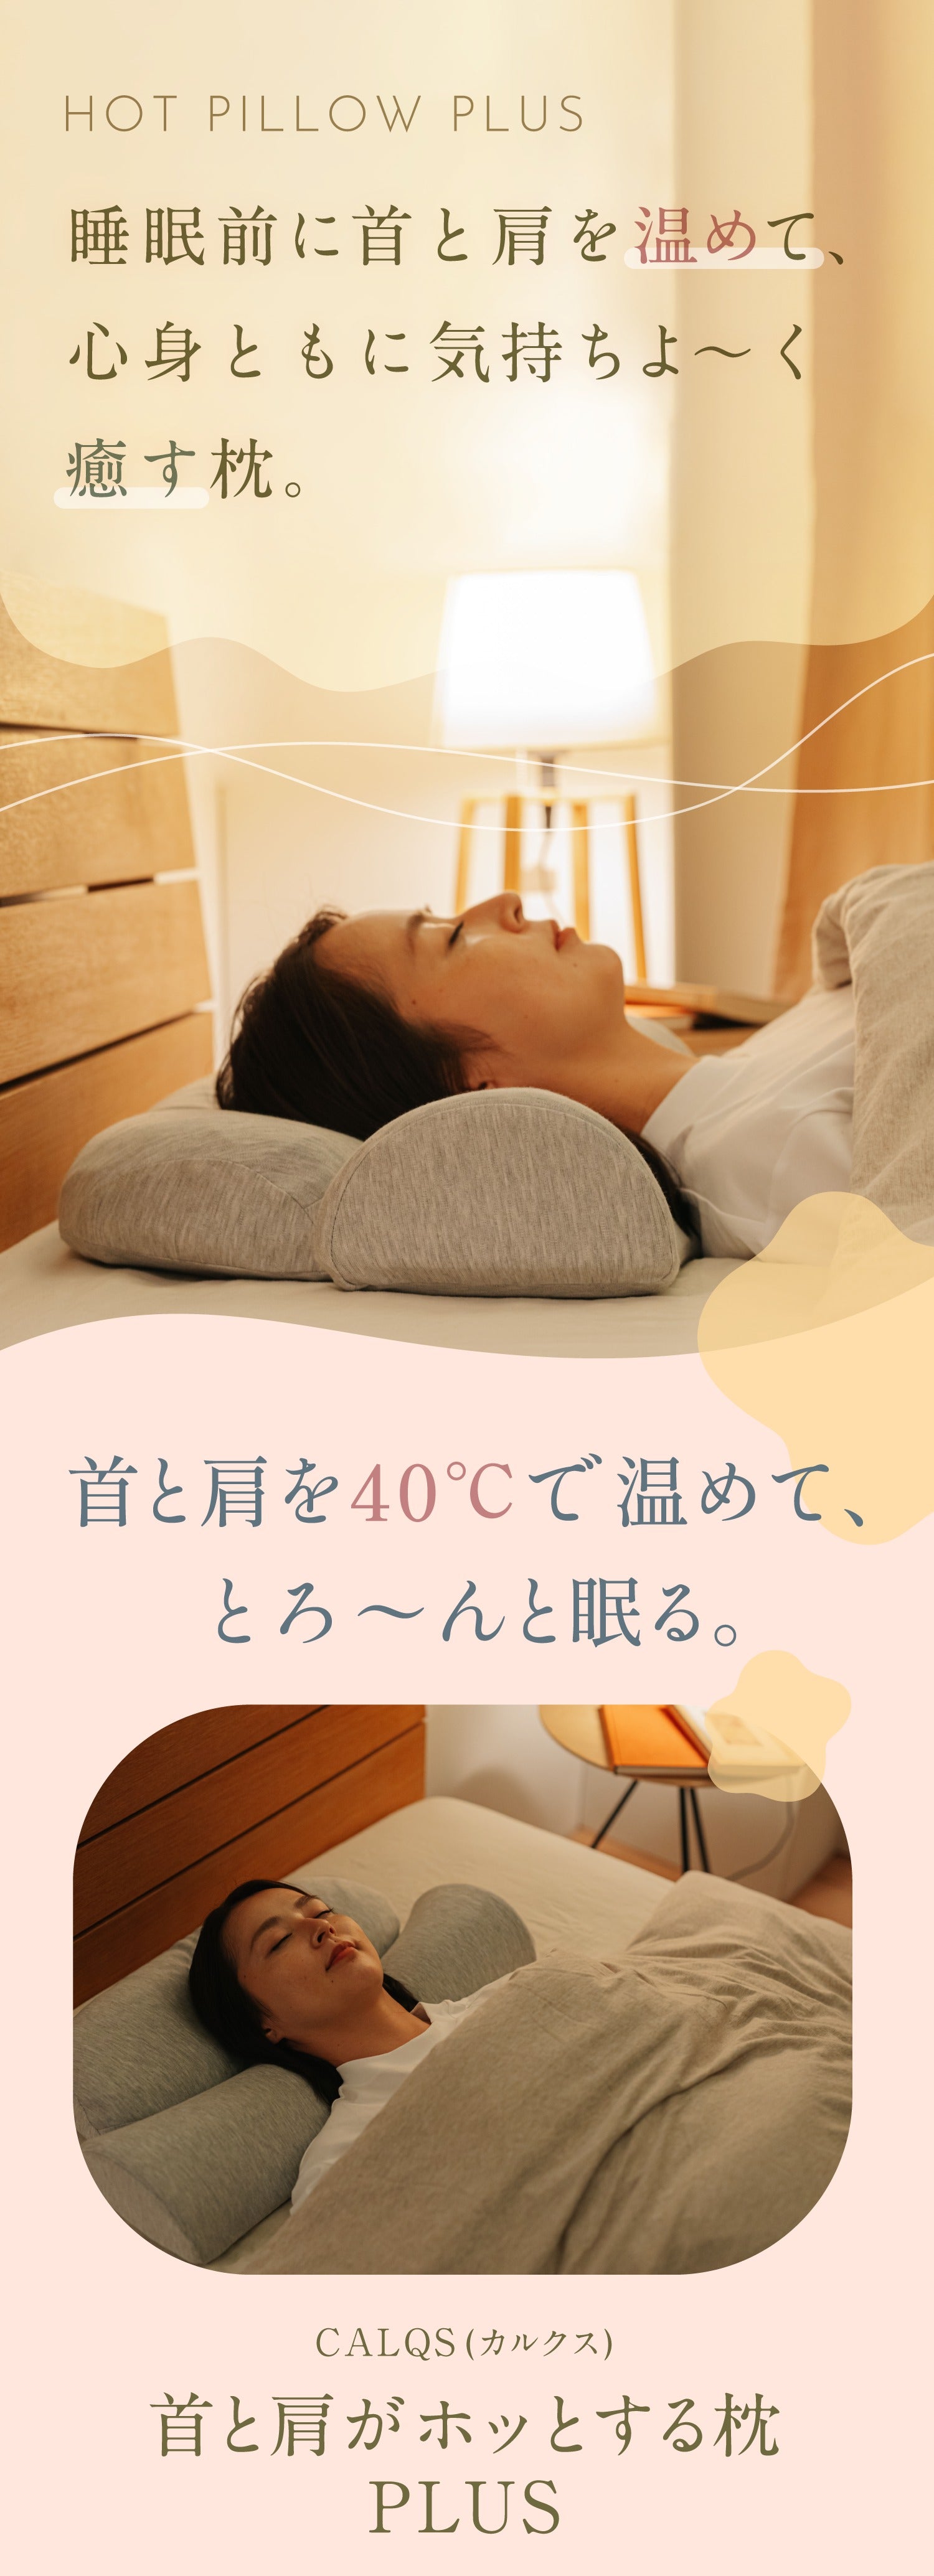 首と肩がホッとする枕PLUS | 首を40度で15分間温めながら揉むことで心地よい睡眠を手に入れられるホットまくらプラス【PH01-C】